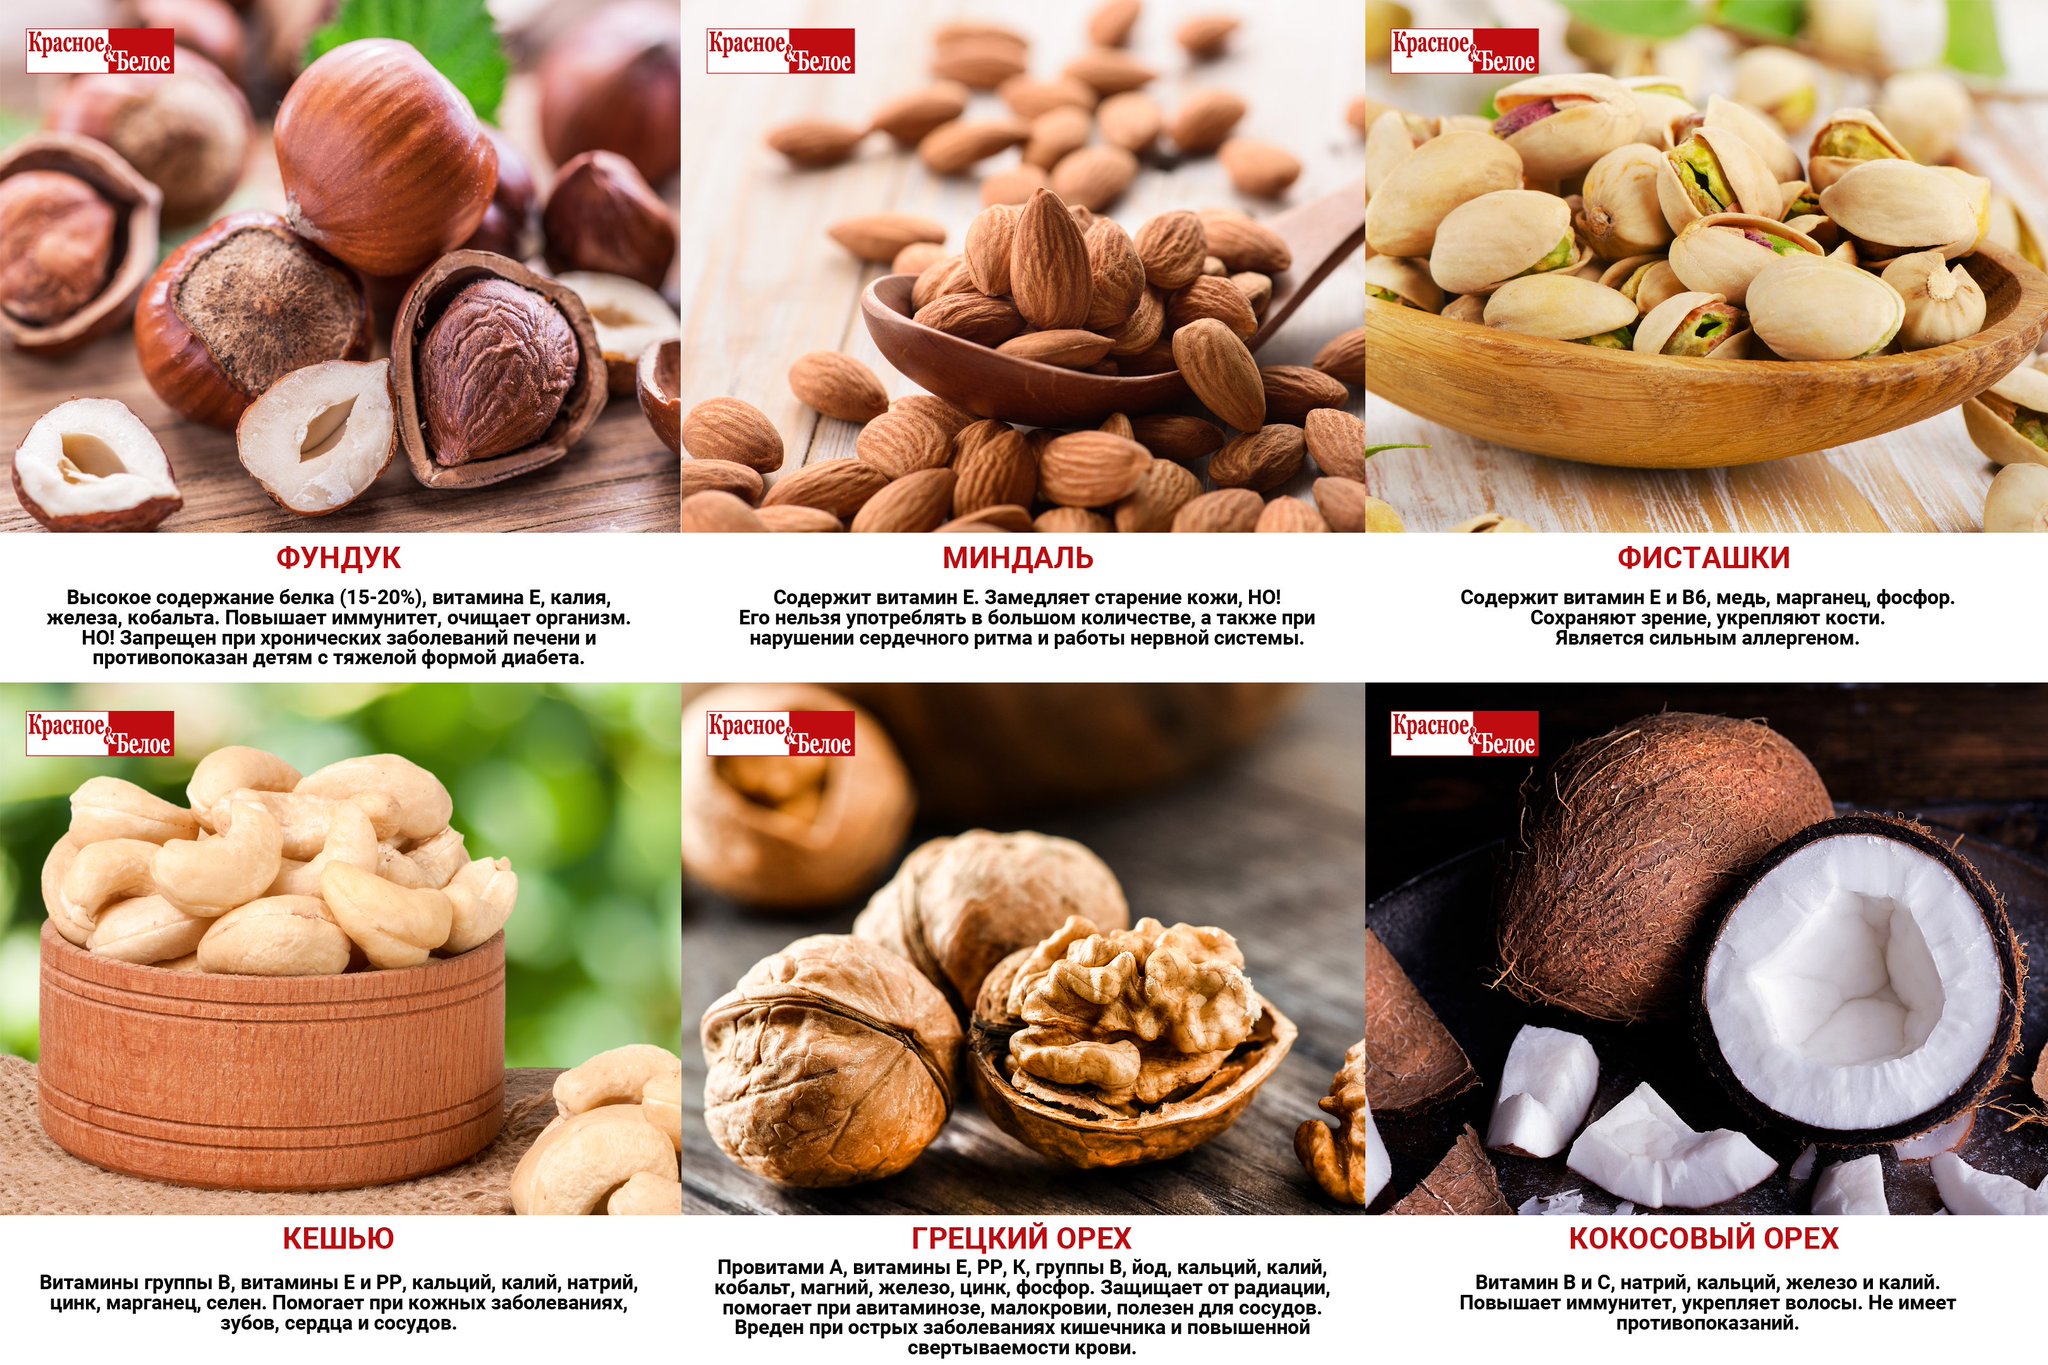 Сейшельский орех — описание, полезные и вредные свойства, состав, калорийность